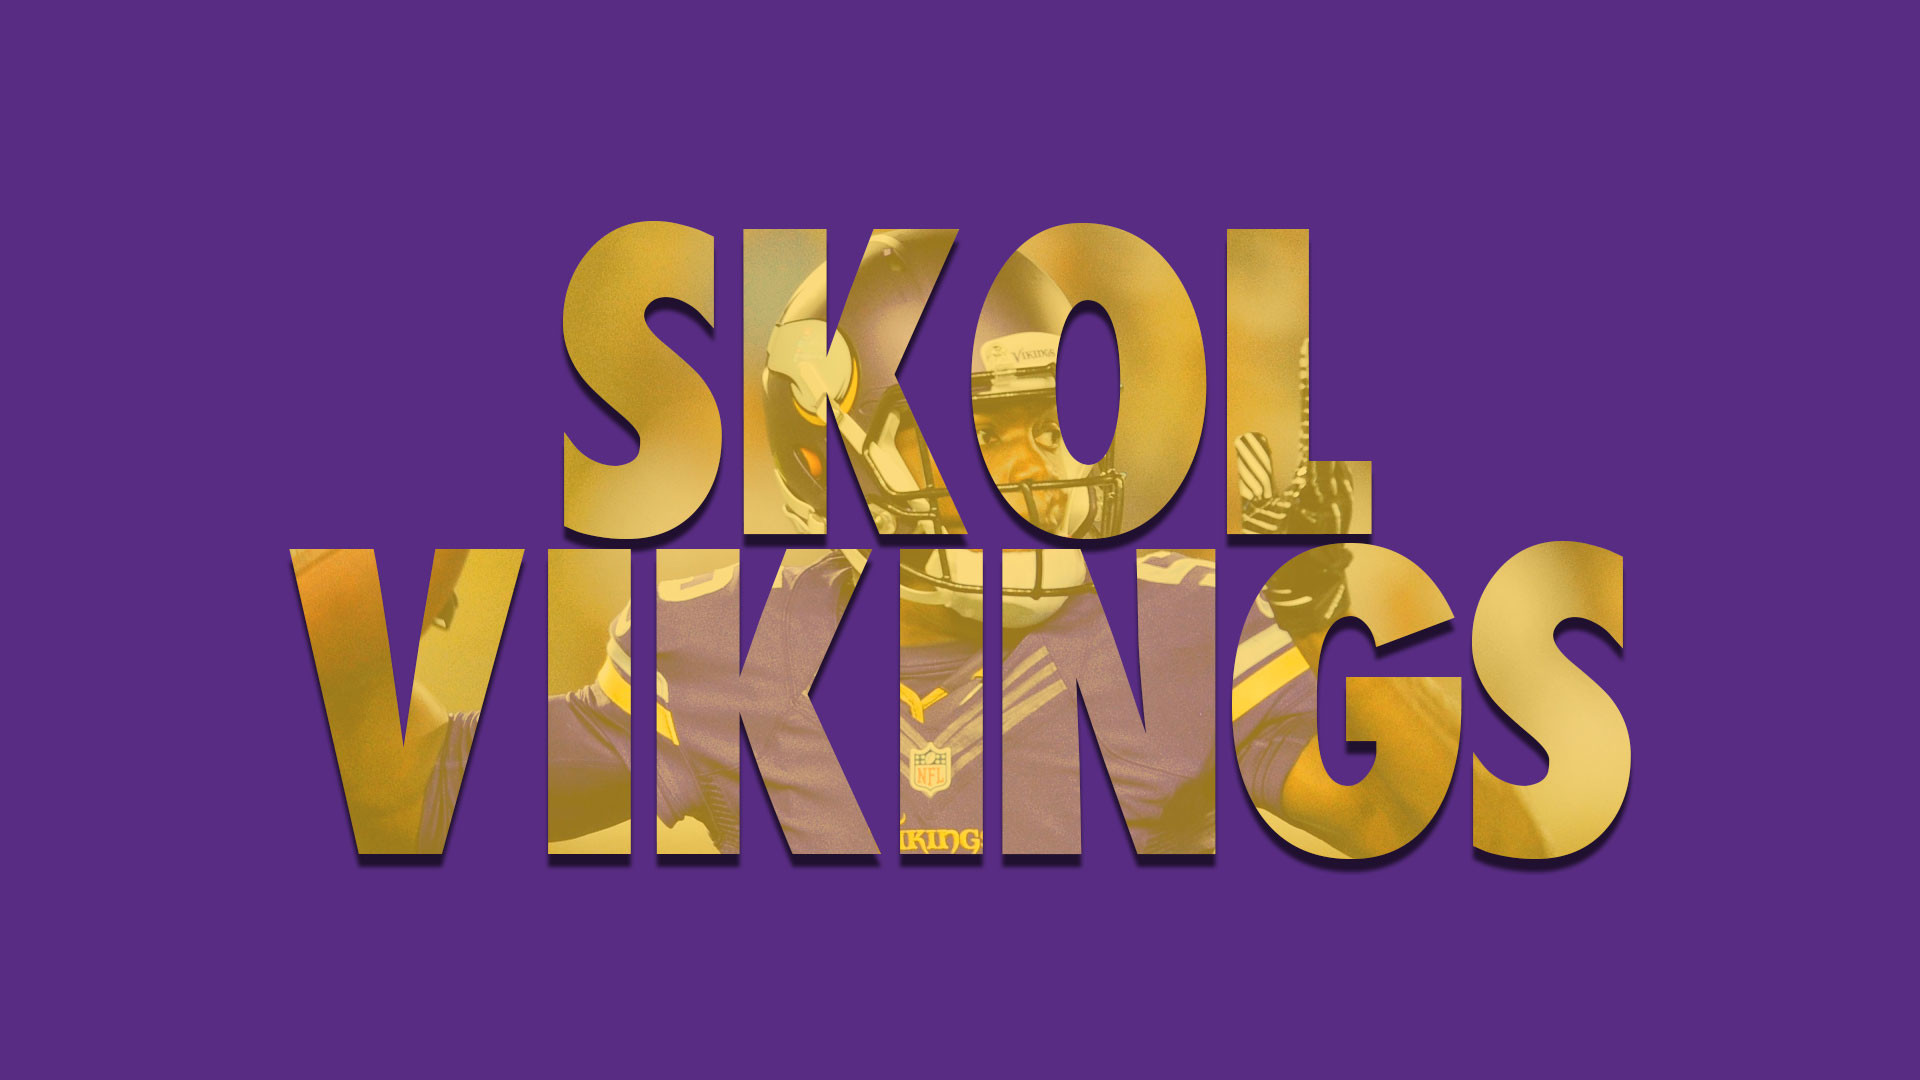 Minnesota Vikings Wallpaper Hd - Minnesota Vikings Skol Background , HD Wallpaper & Backgrounds